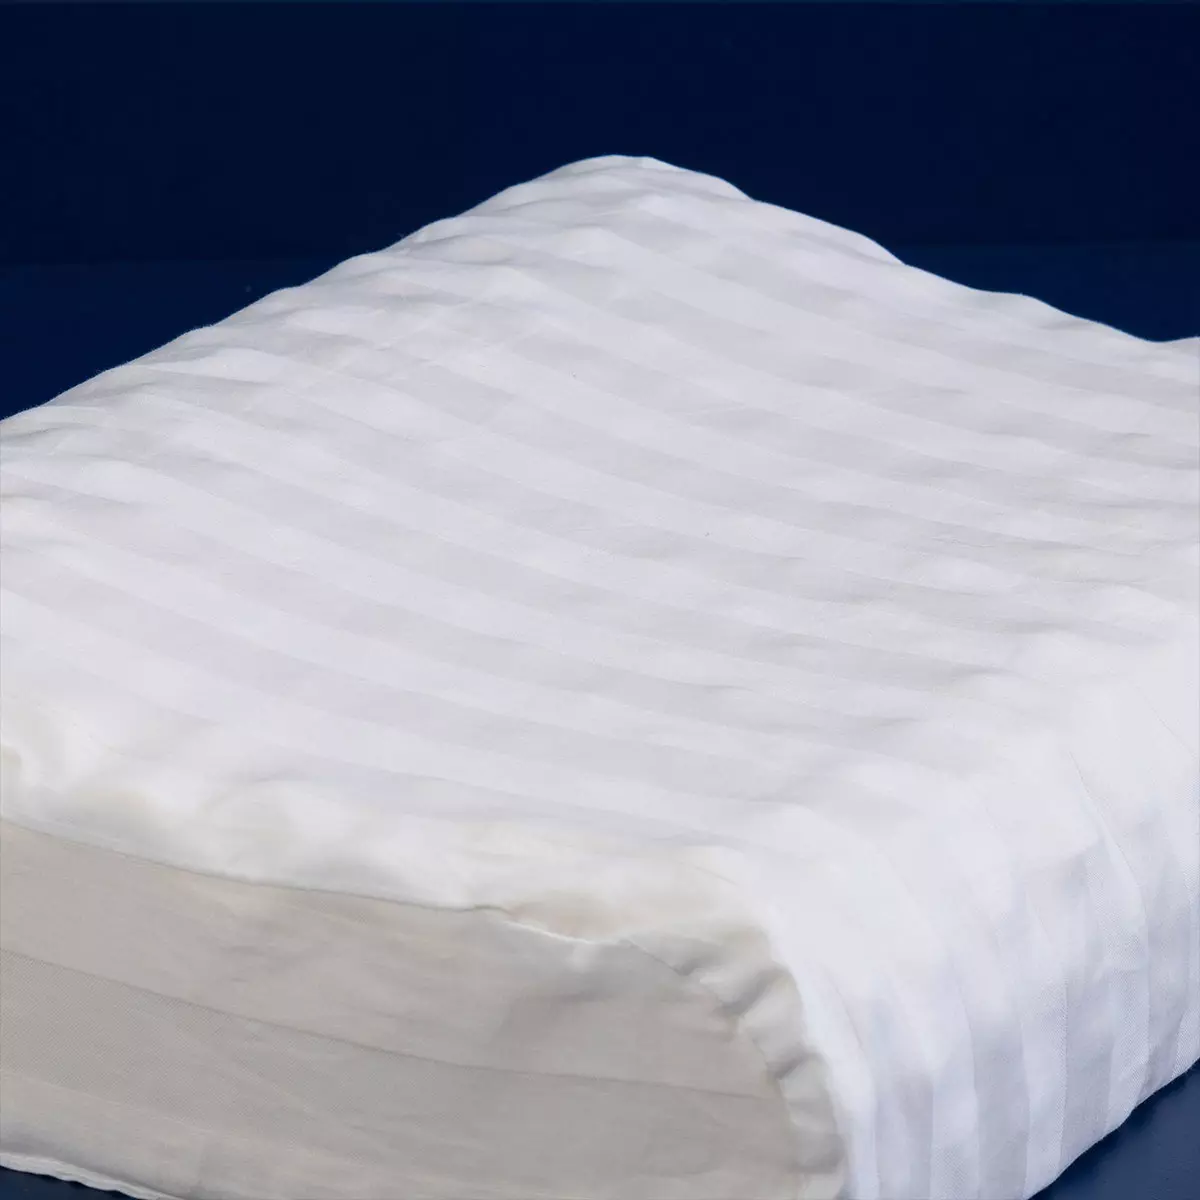 %100 doğal lateks yastık. Kauçuk ağacı özütünden. %100 Doğal pamuk kumaş. Hälsa uyku sanatı şimdi Ev Tekstilinde sağlıklı uyku ürünlerini sunuyor. Dört mevsim kullanım.